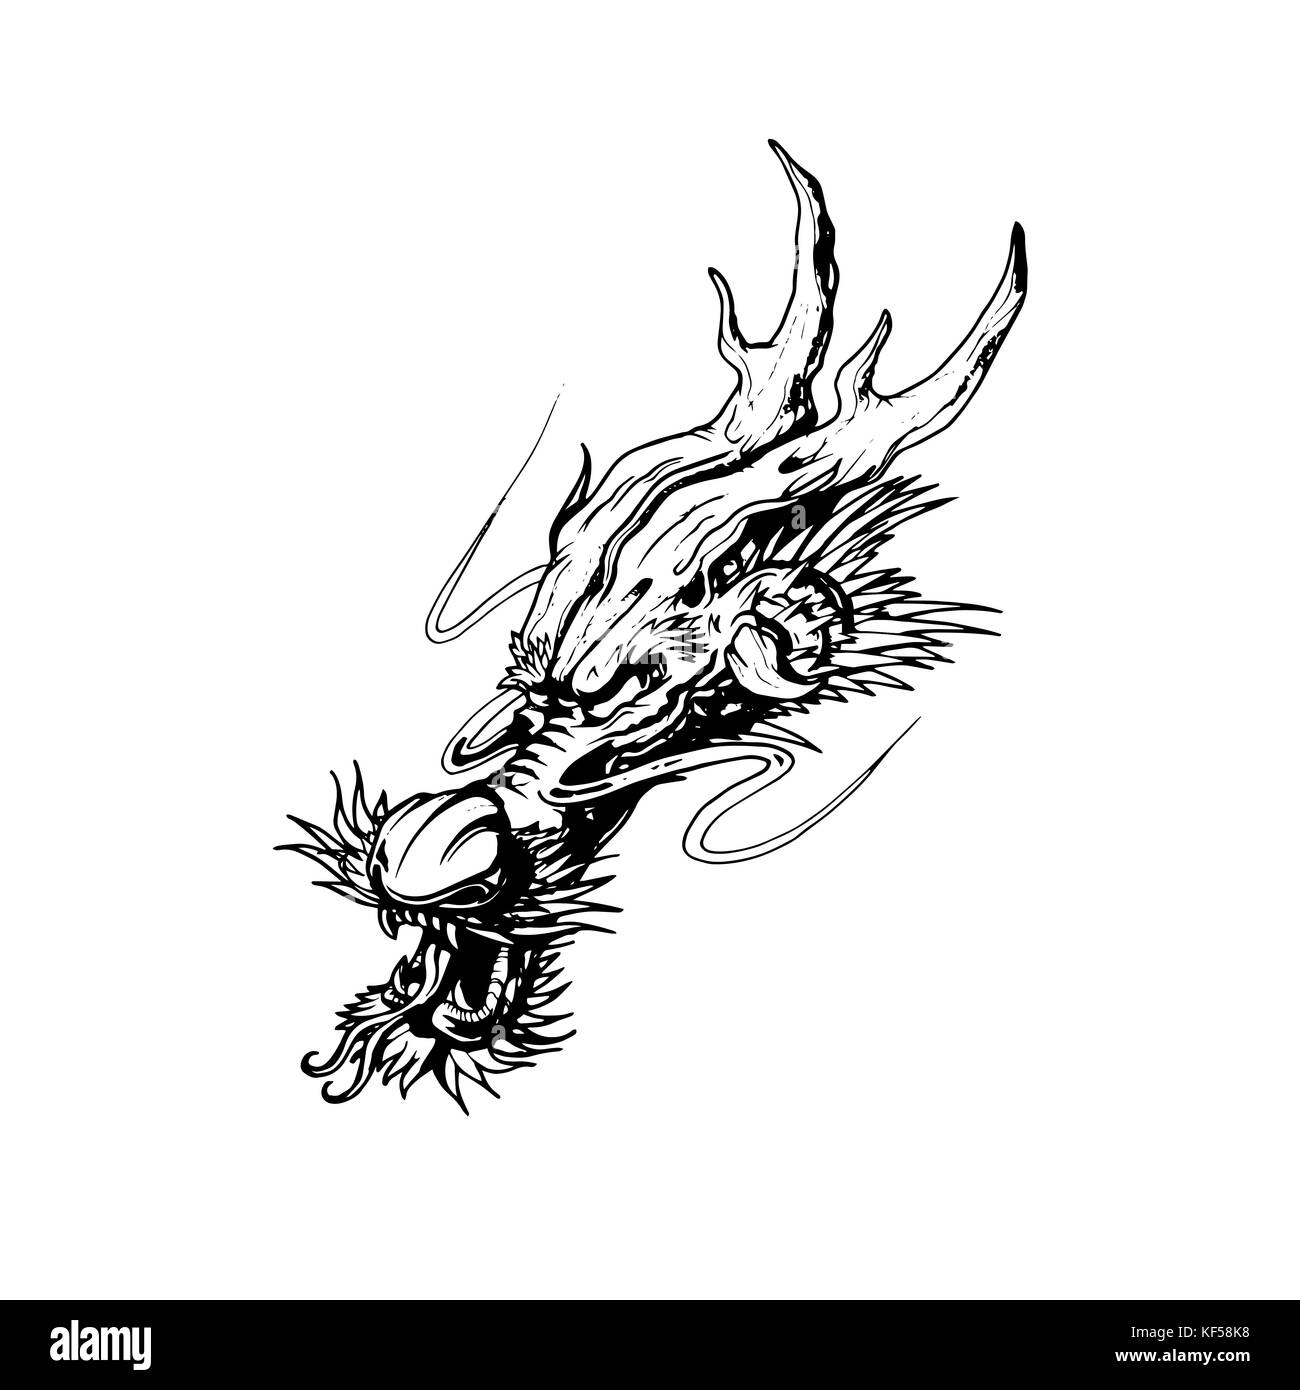 Dragon vector design Stock Photo